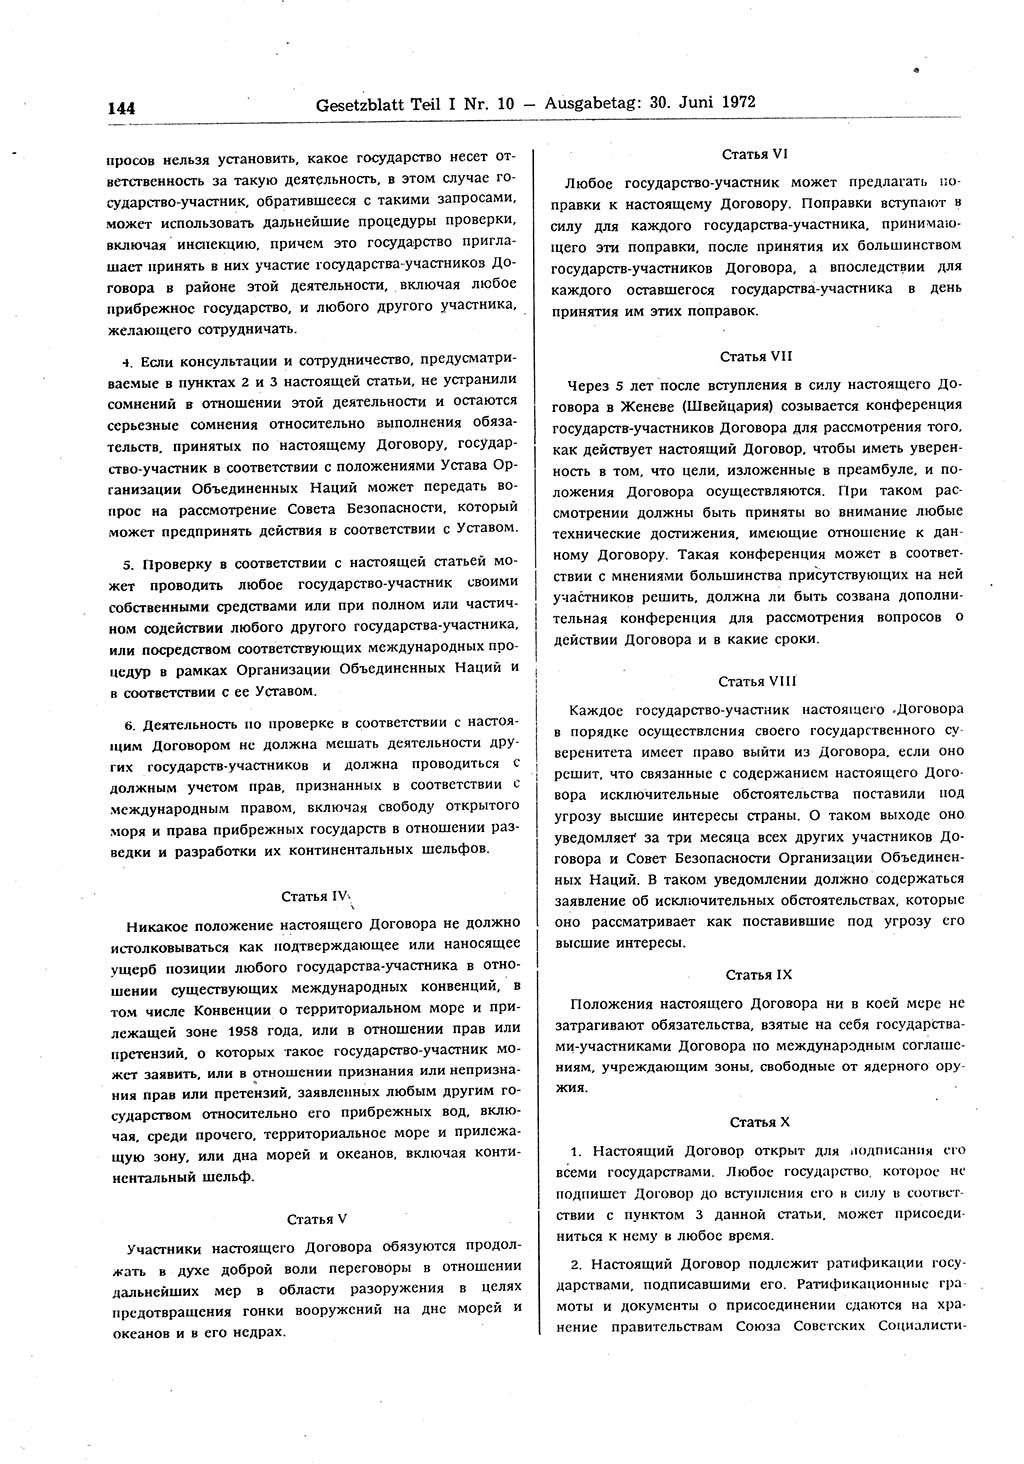 Gesetzblatt (GBl.) der Deutschen Demokratischen Republik (DDR) Teil Ⅰ 1972, Seite 144 (GBl. DDR Ⅰ 1972, S. 144)